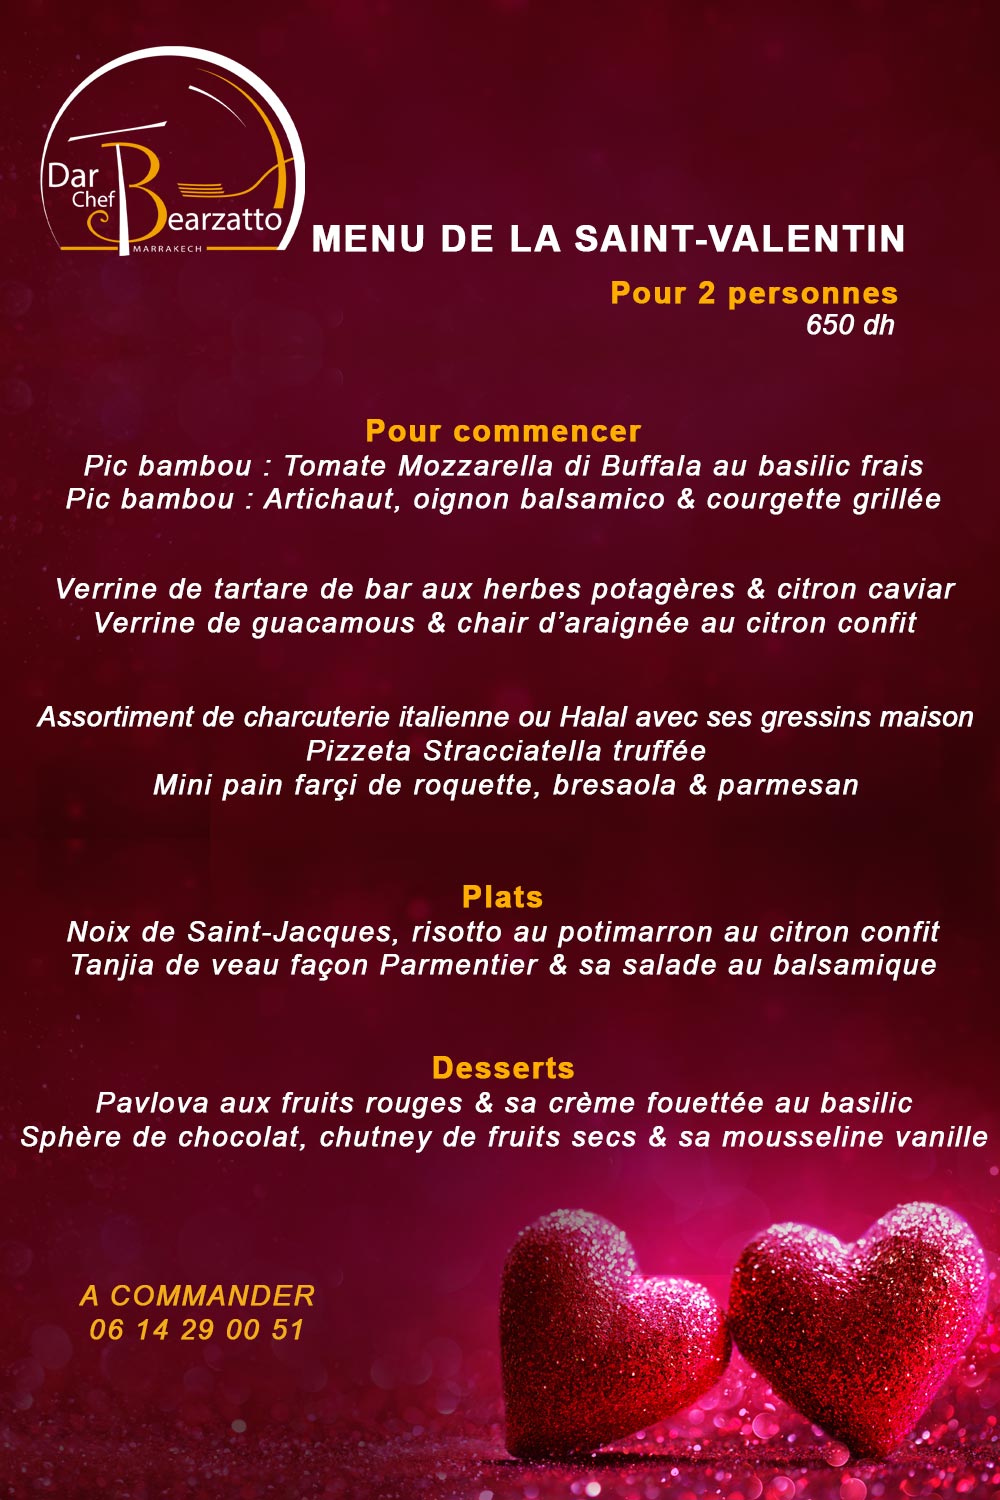 Menu de Saint Valentin par le Chef Olivier Bearzatto Marrakech